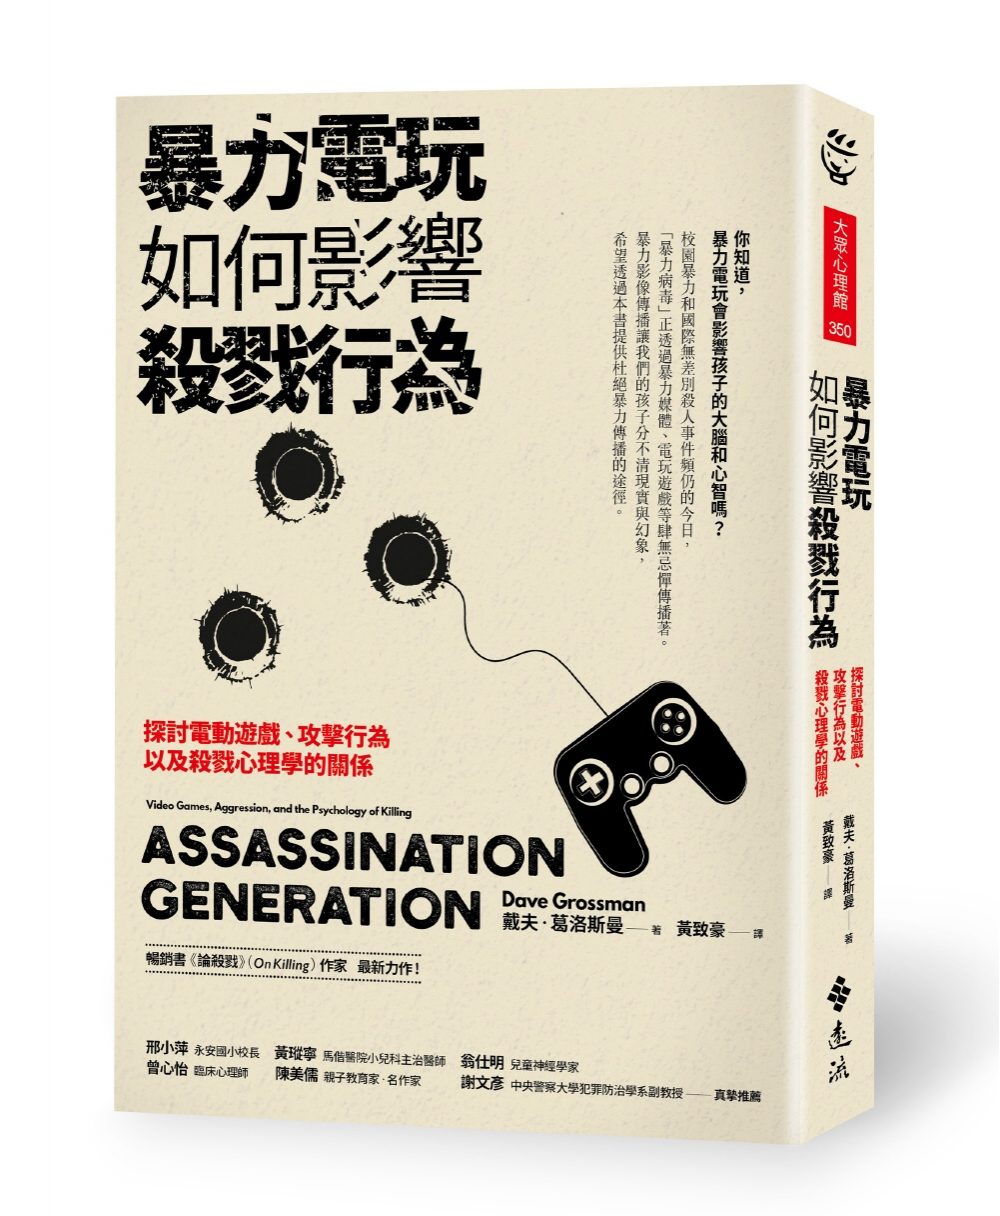 暴力電玩如何影響殺戮行為：探討電動遊戲、攻擊行為以及殺戮心理學的關係